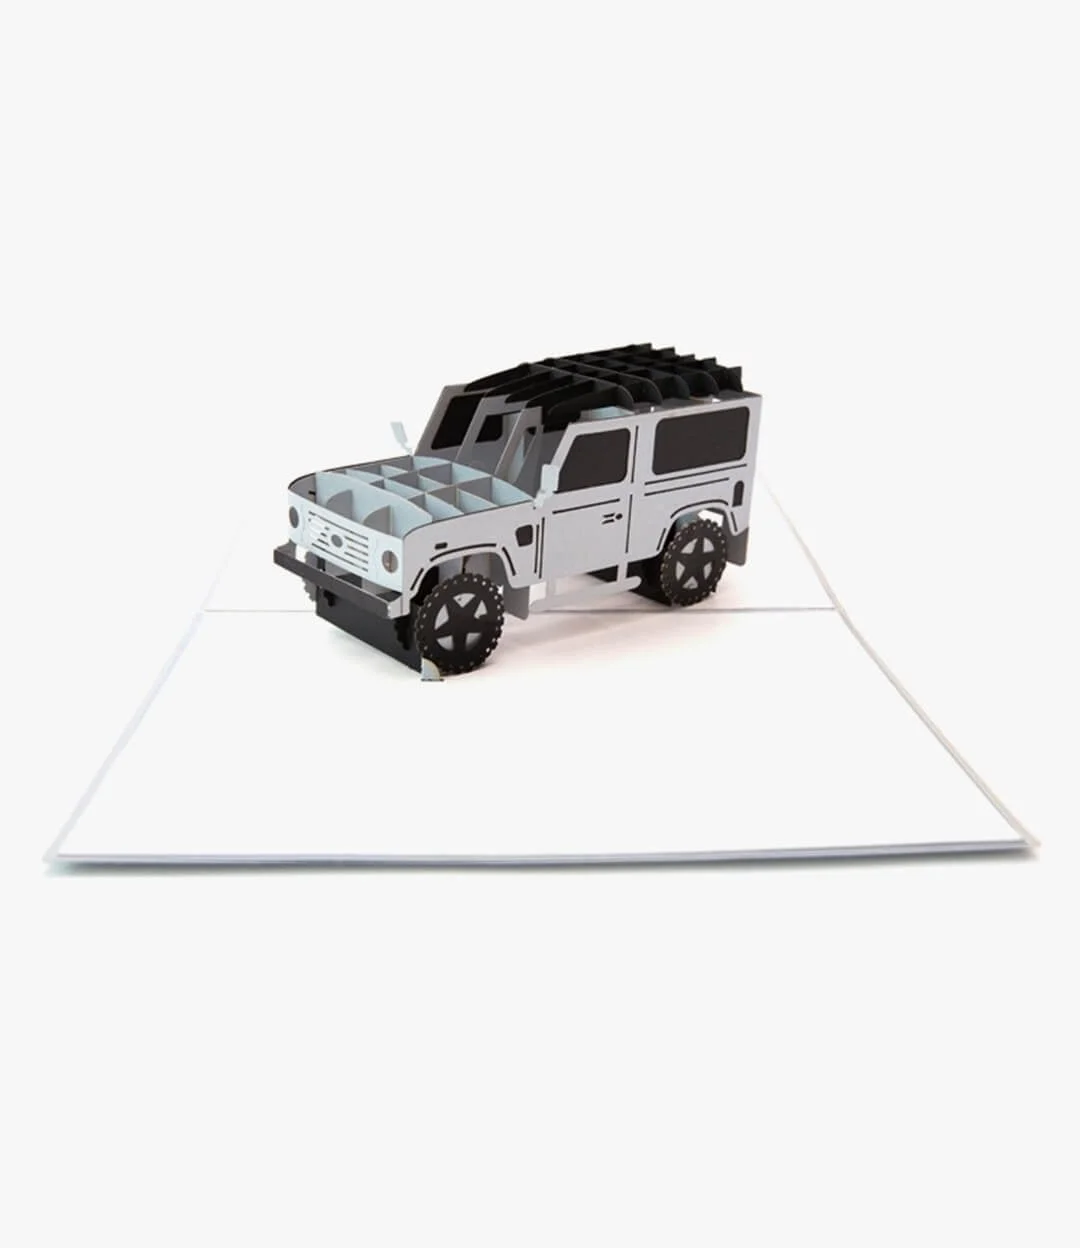 4 x 4 - Offroad truck 3D Pop up Abra Cards